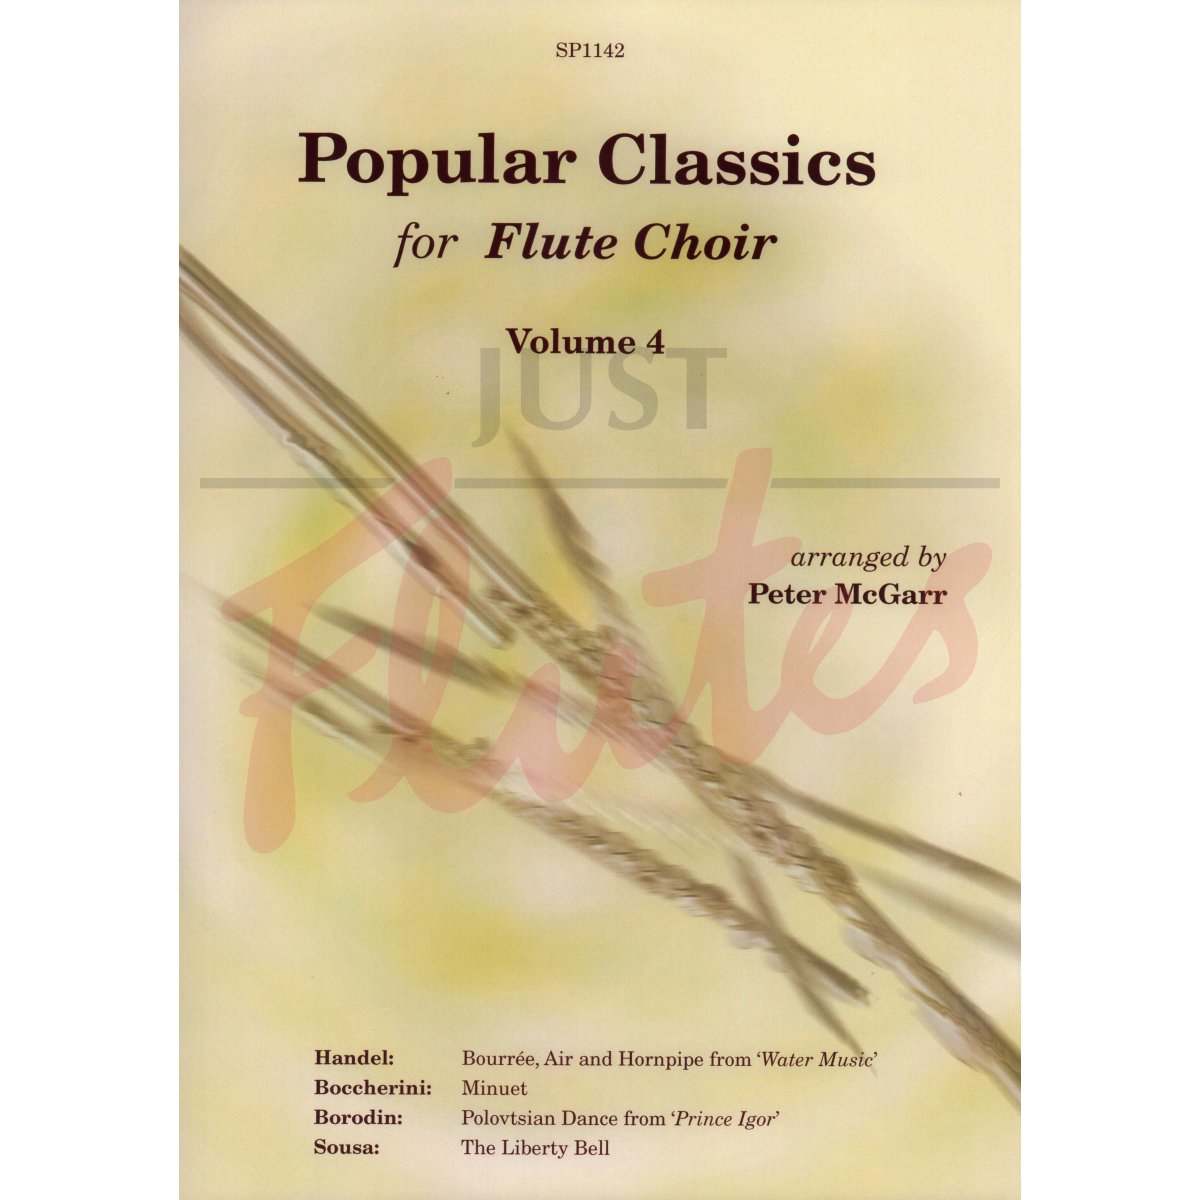 Popular Classics for Flute Choir